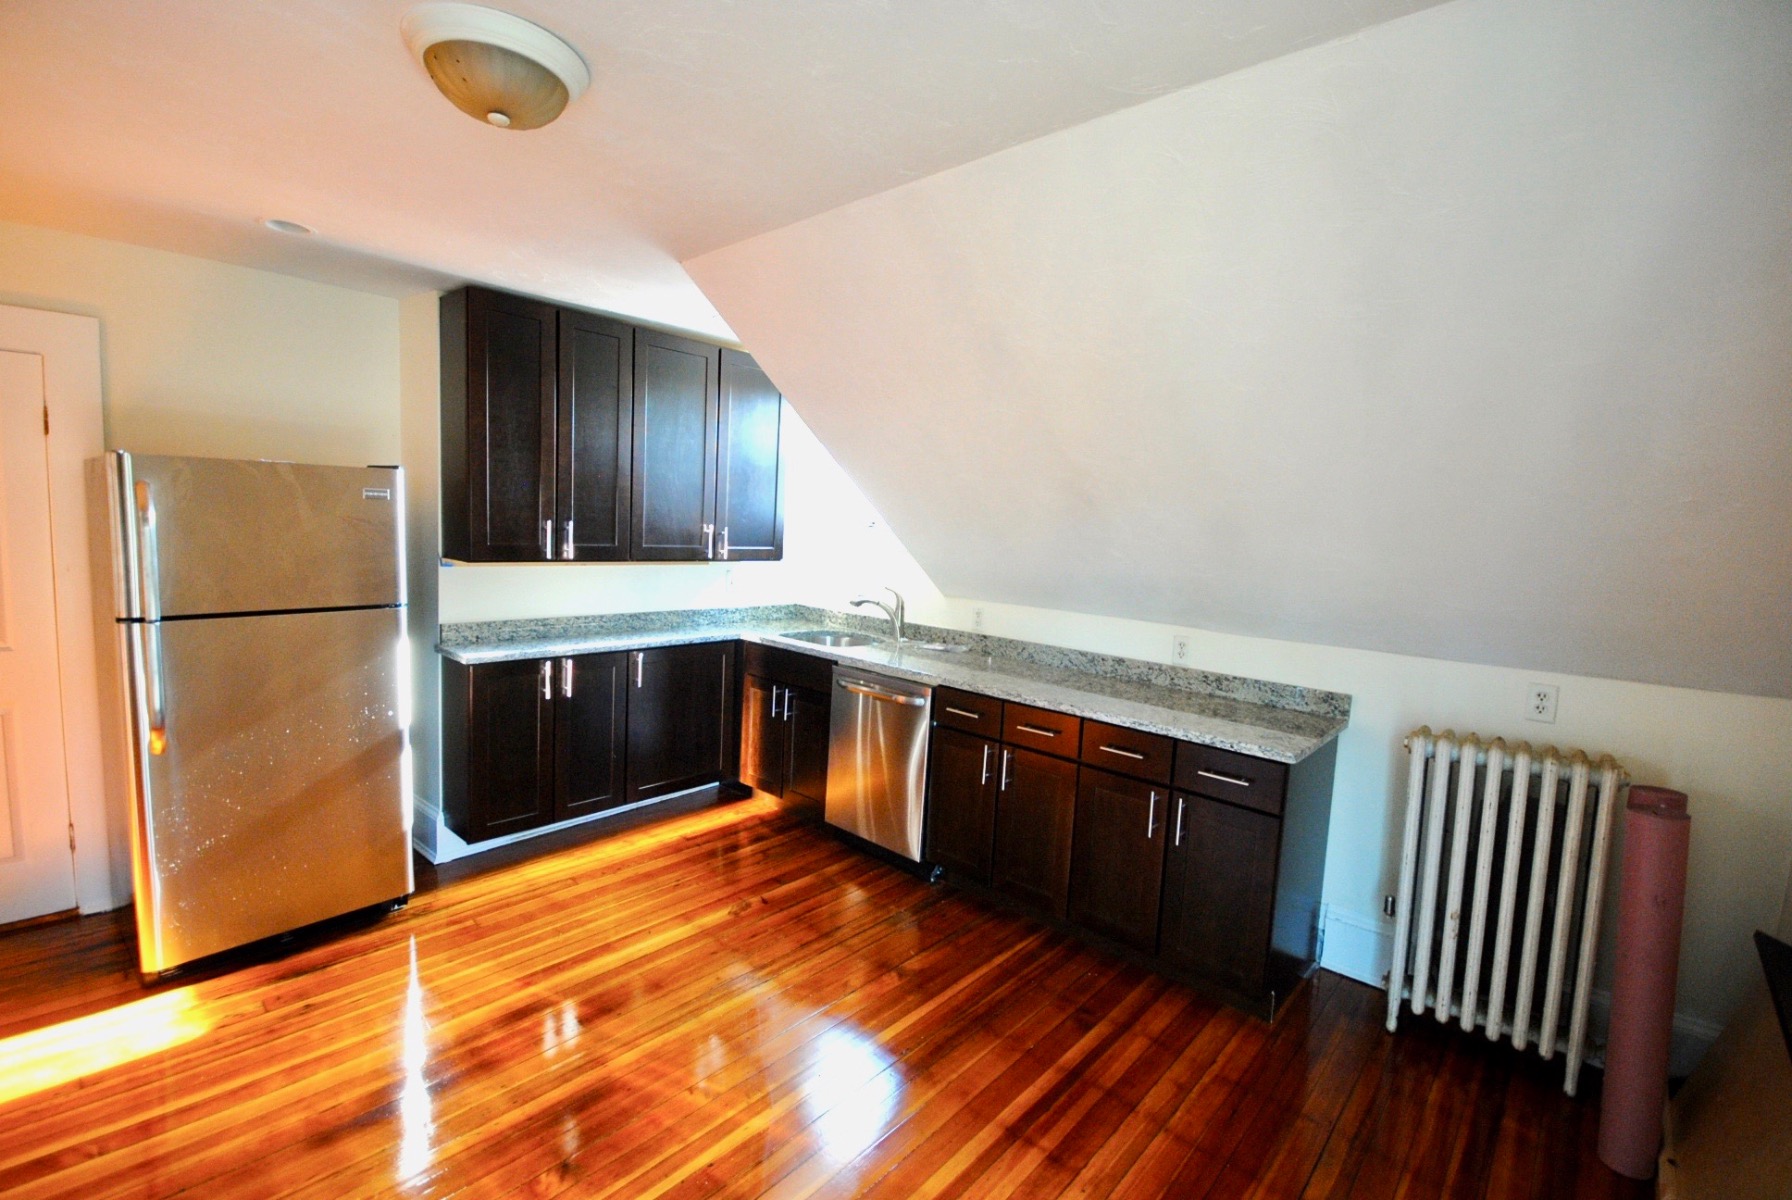 Photos of apartment on Bowdoin St.,Boston MA 02122